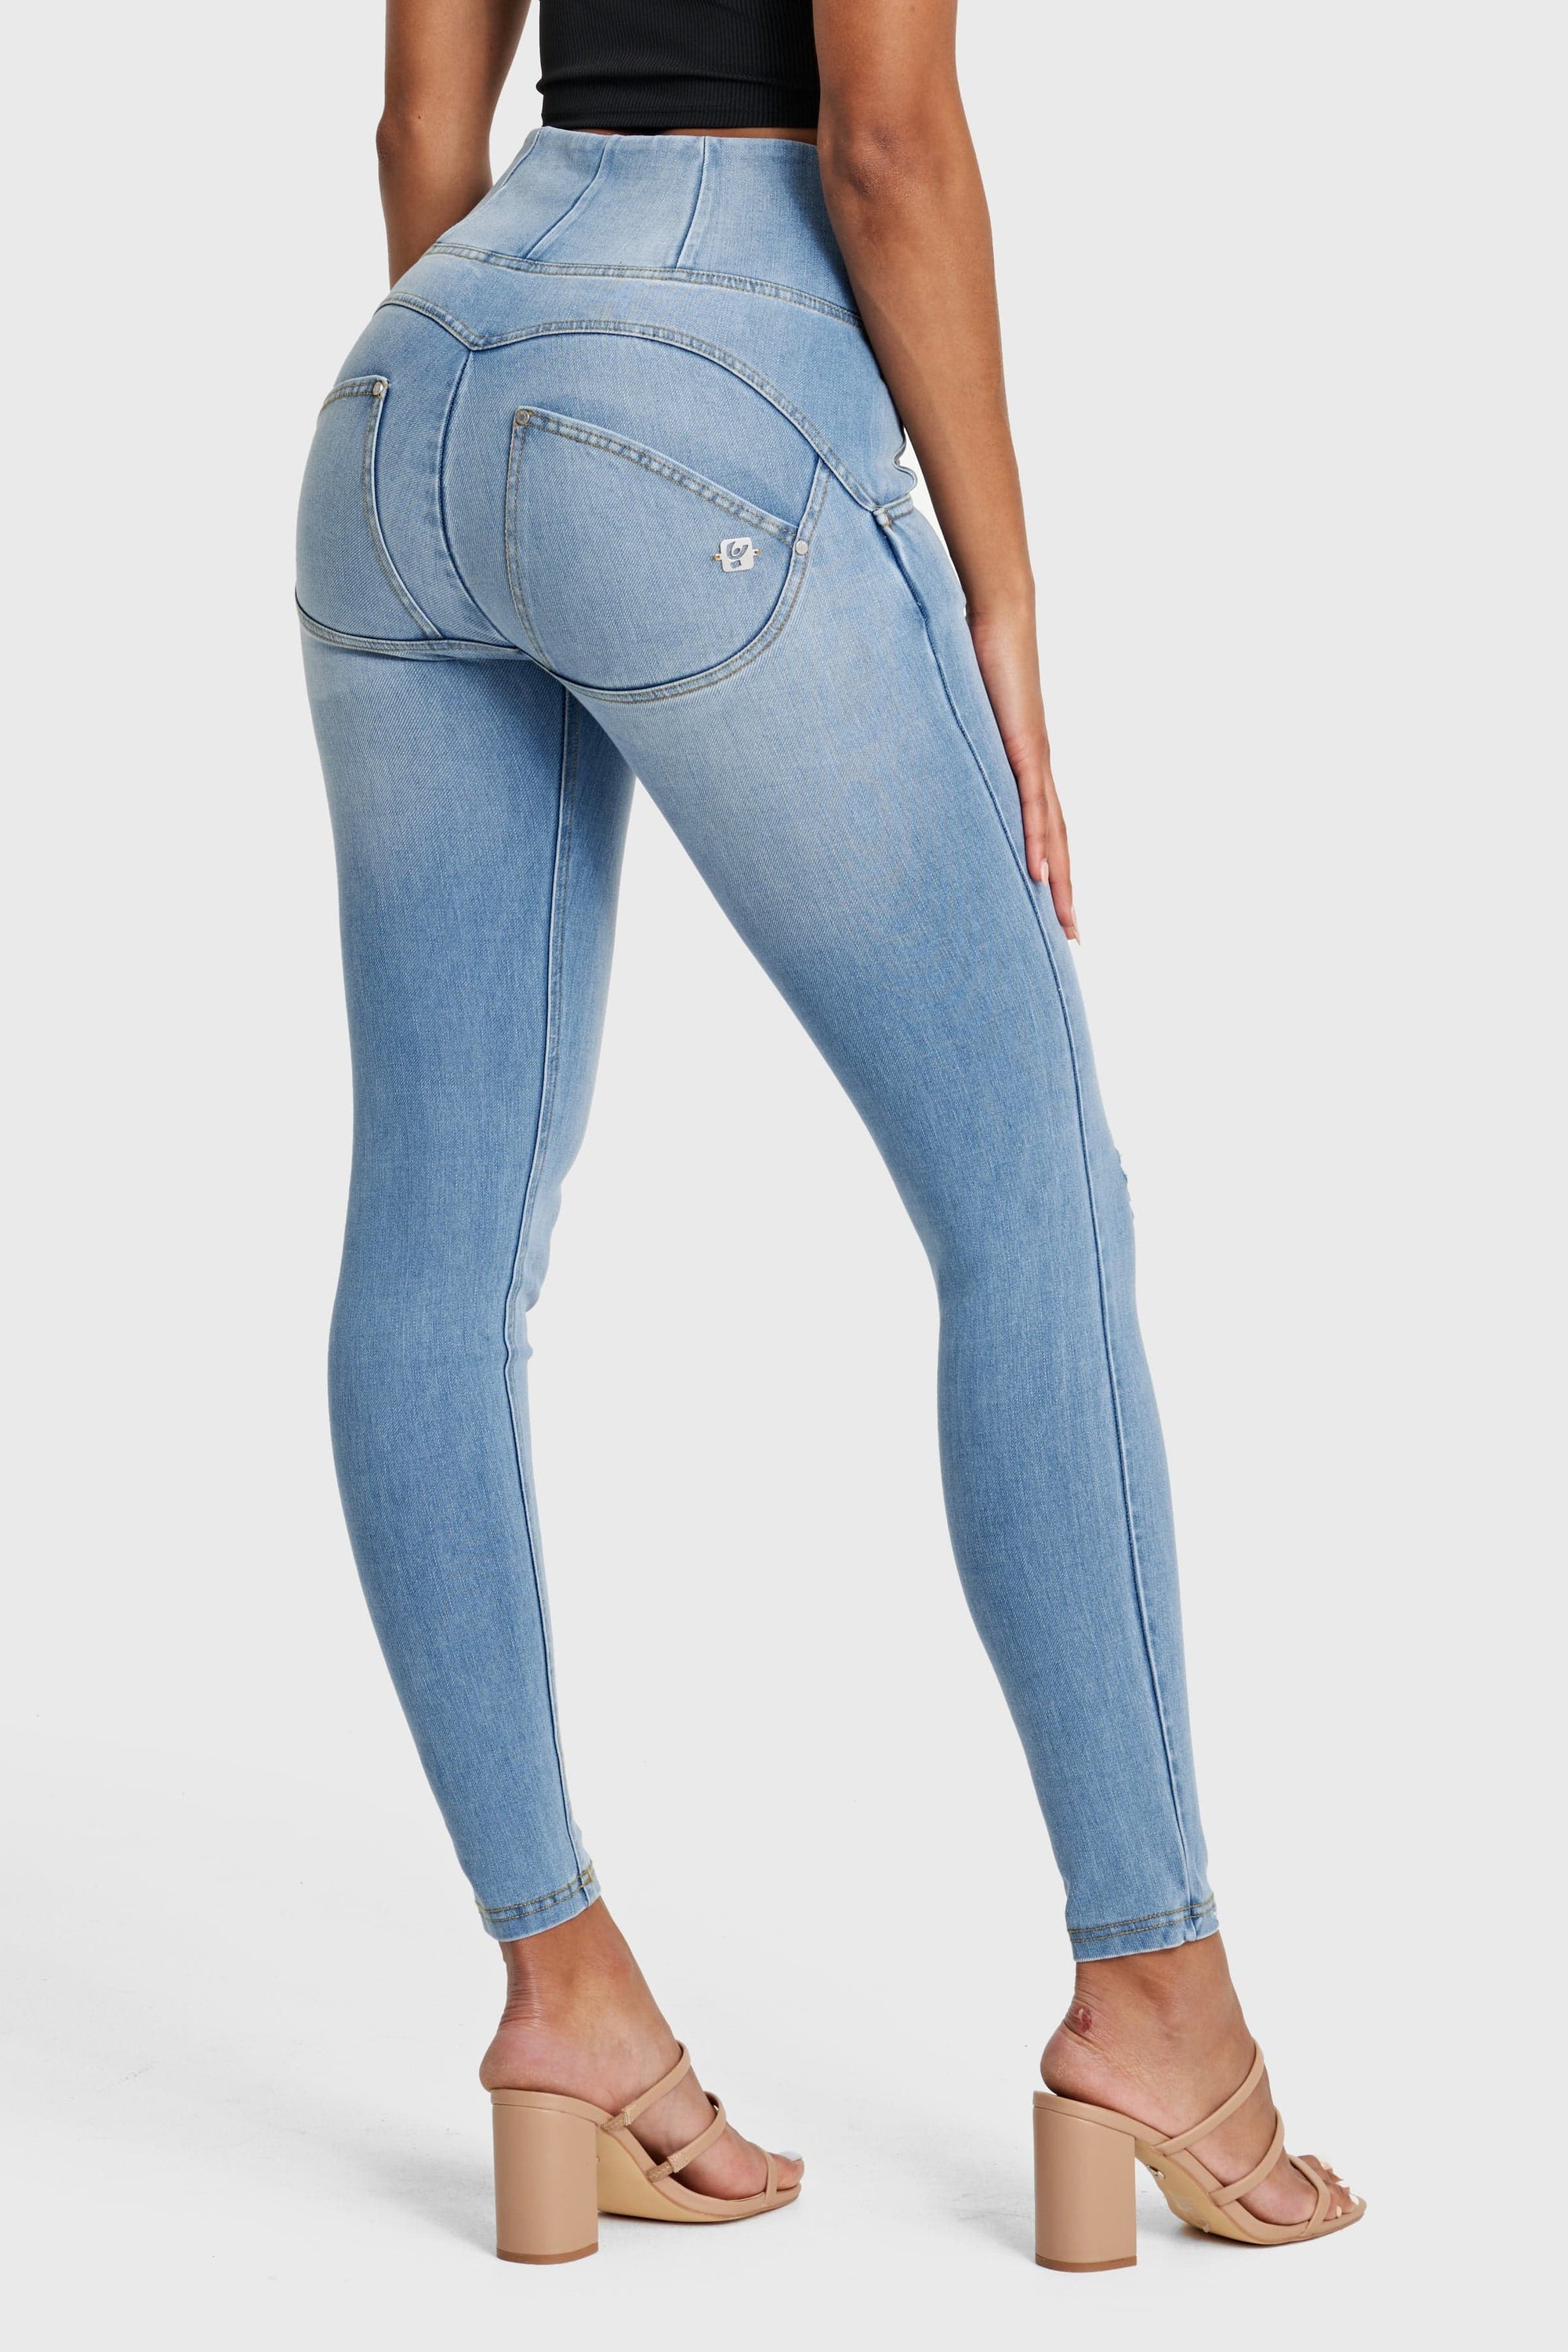 Jeans desgastados WR.UP® Snug - Cintura alta - Largo completo - Azul claro + Costuras amarillas  10